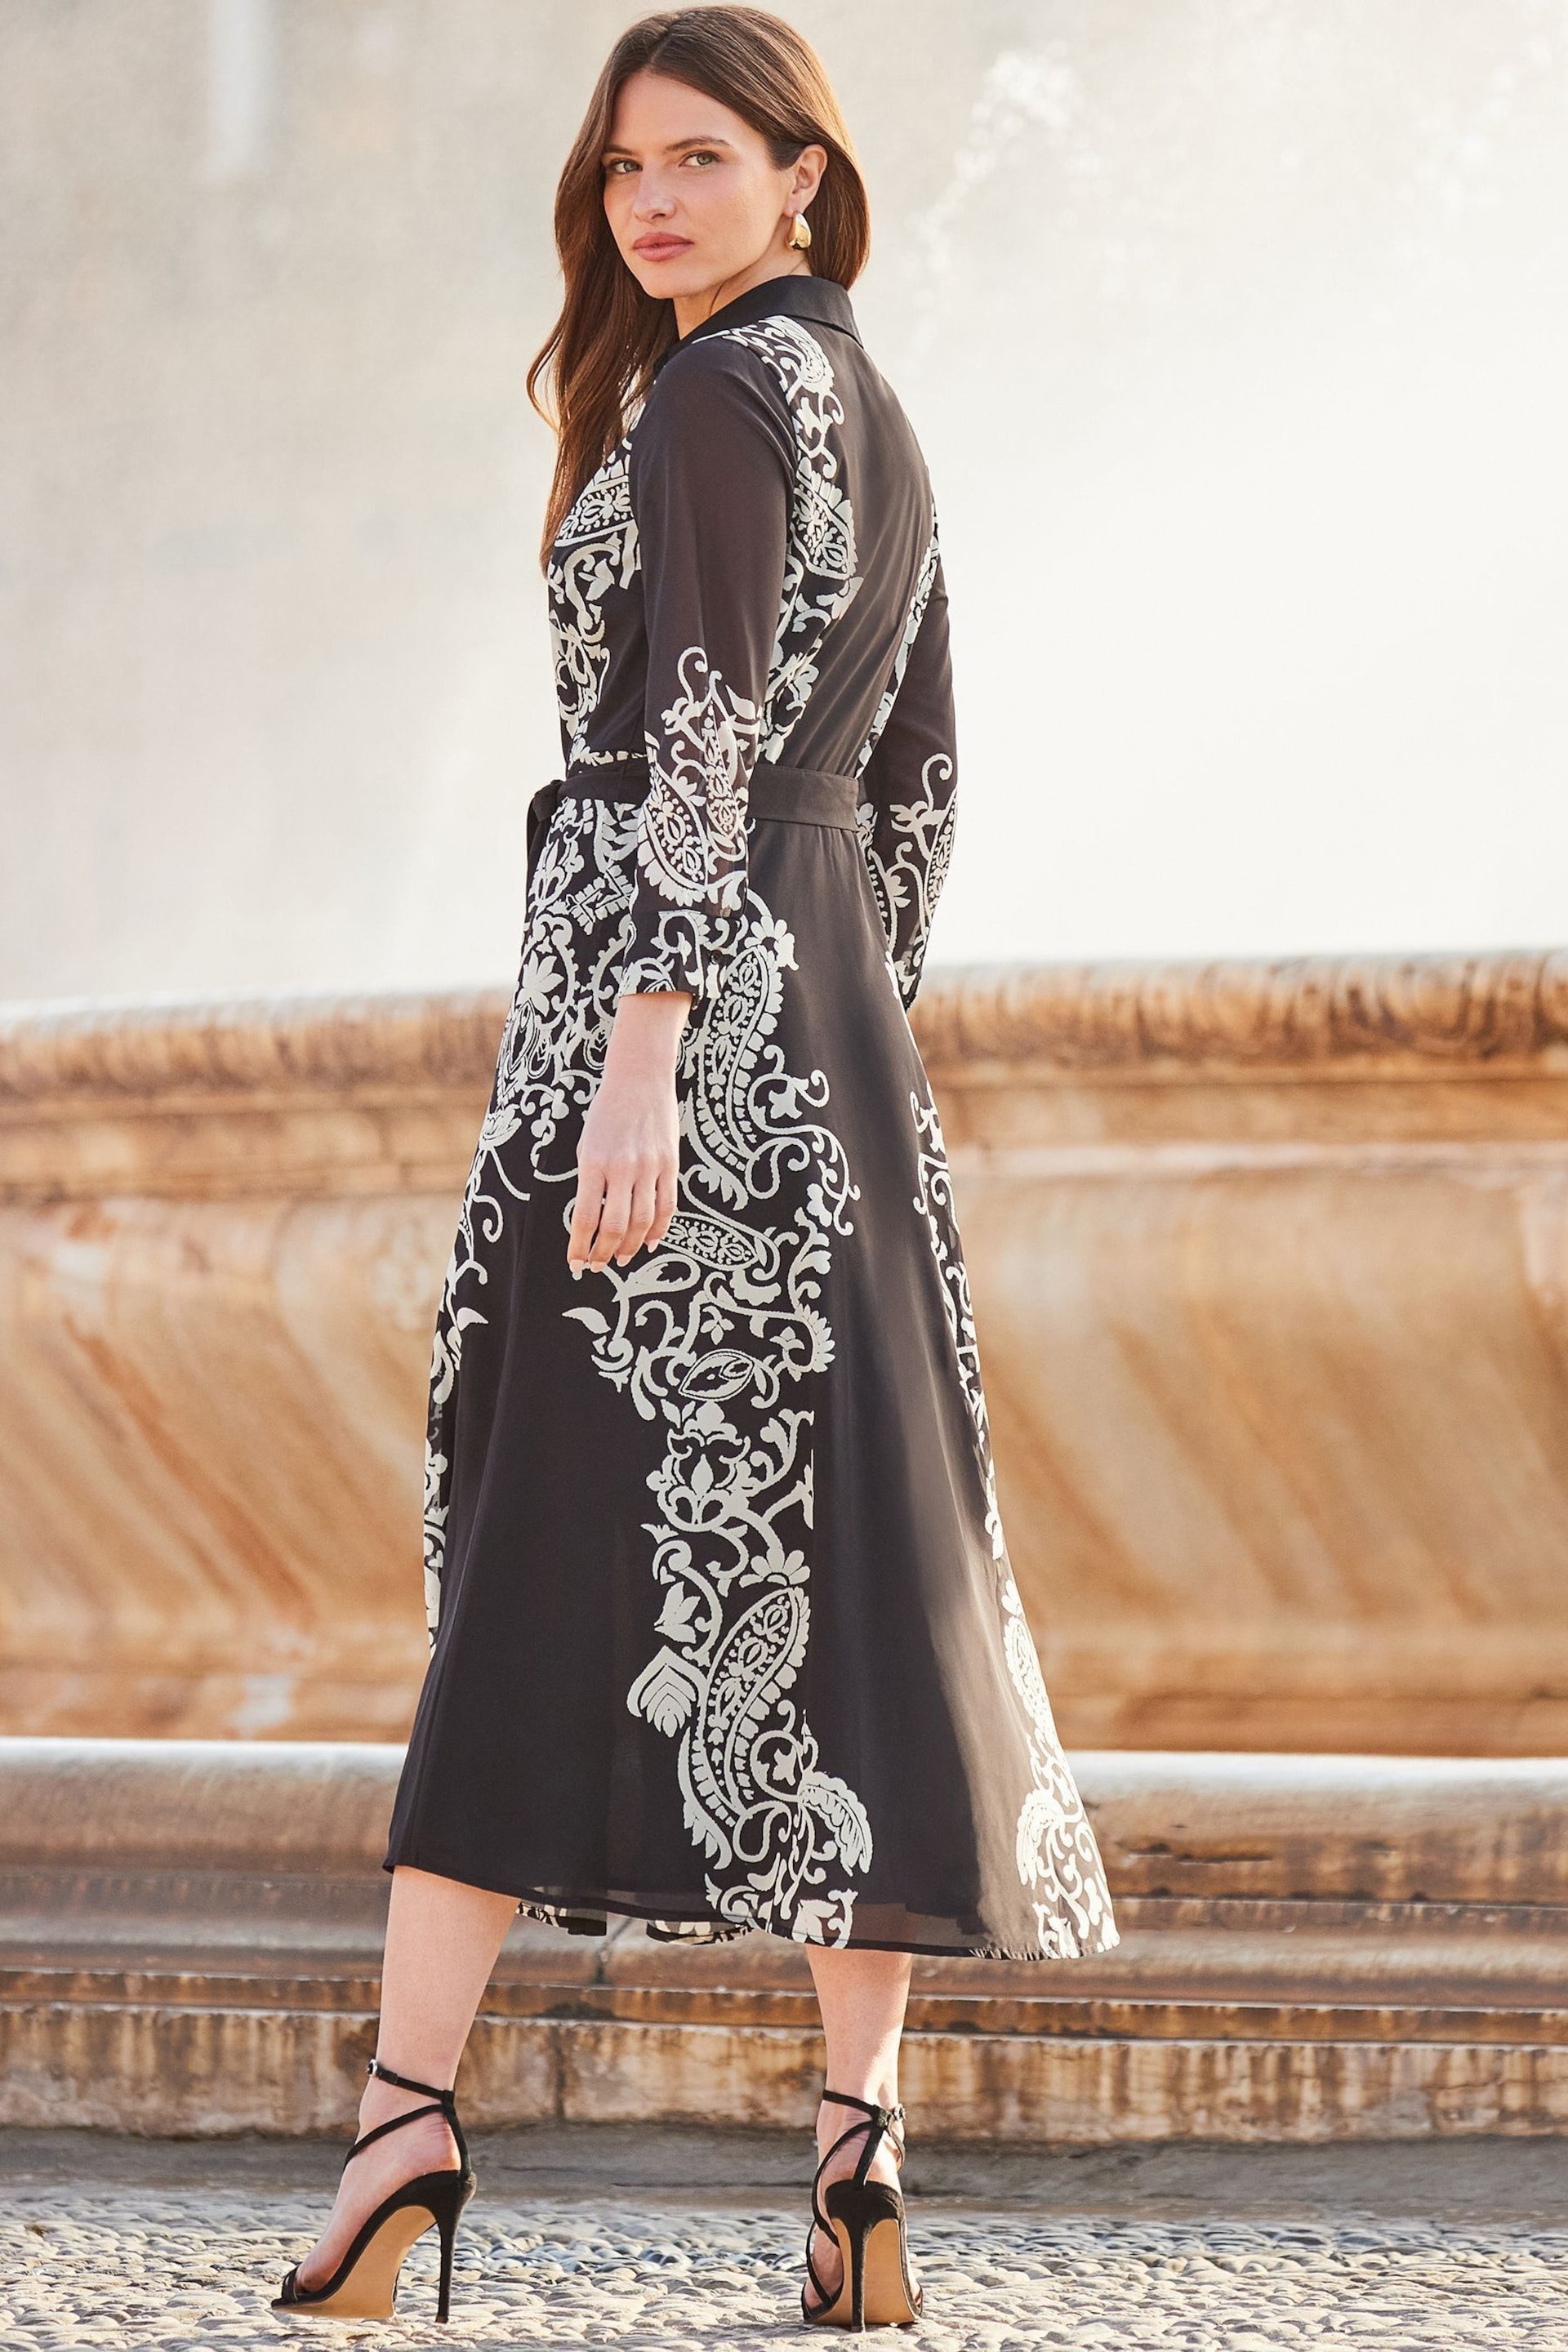 Sosandar Black Floral Print Belted Midi Shirt Dress - Image 3 of 5